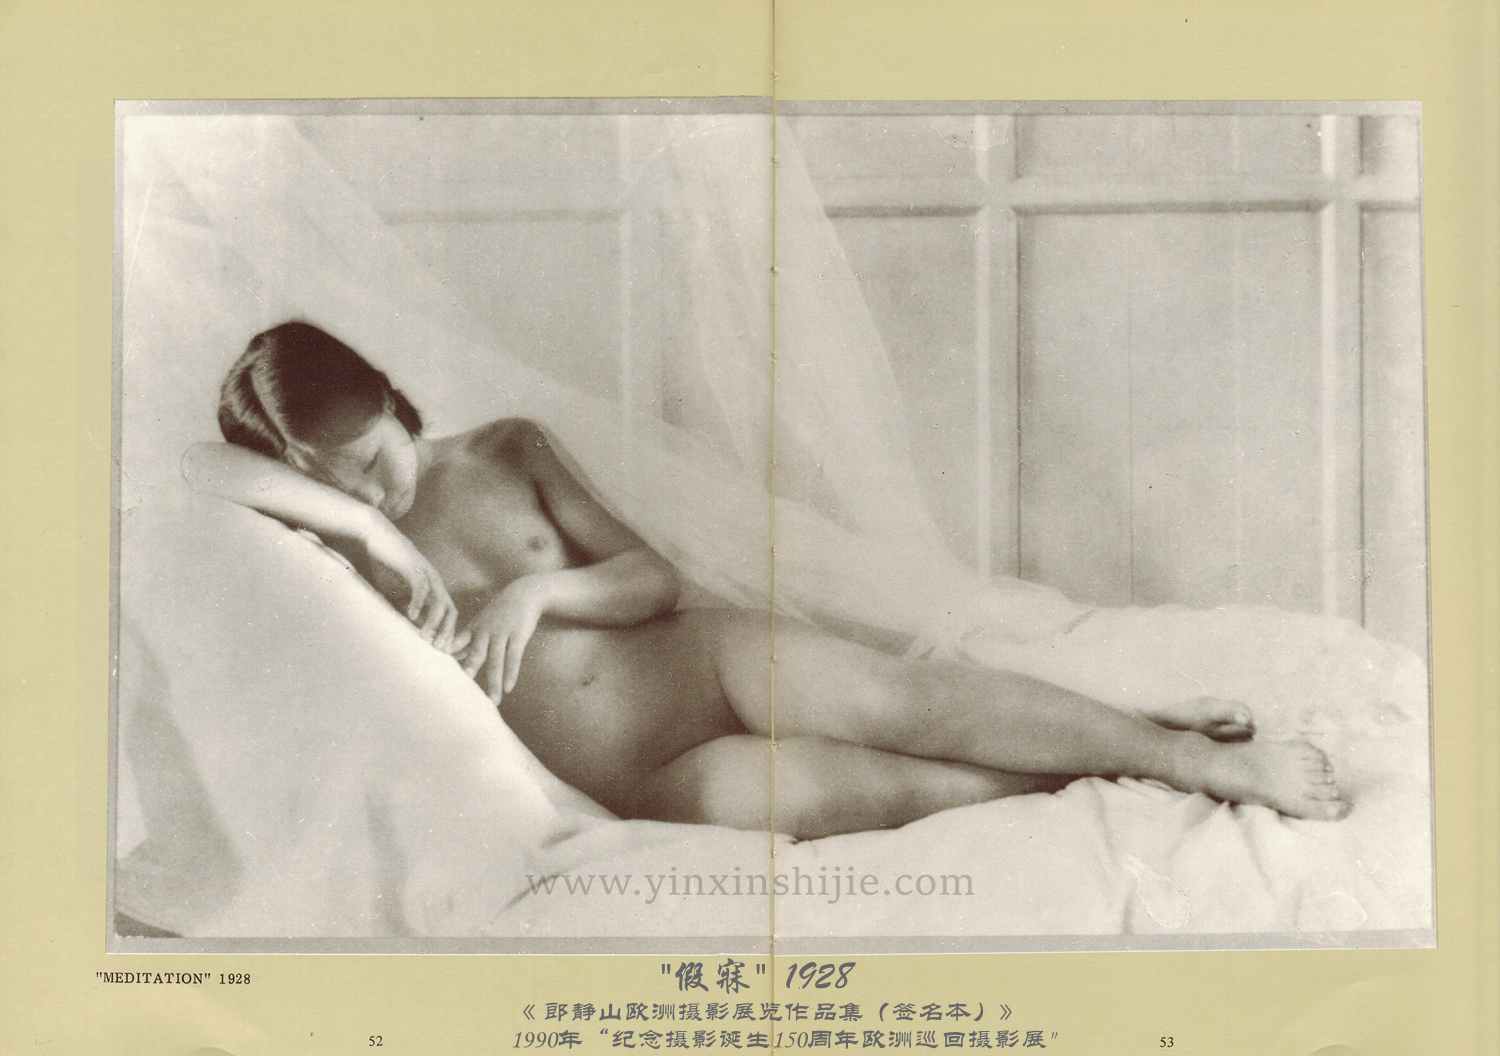 被公认为中国第一幅被公开的裸体照《假寐》——郎静山摄于1928年